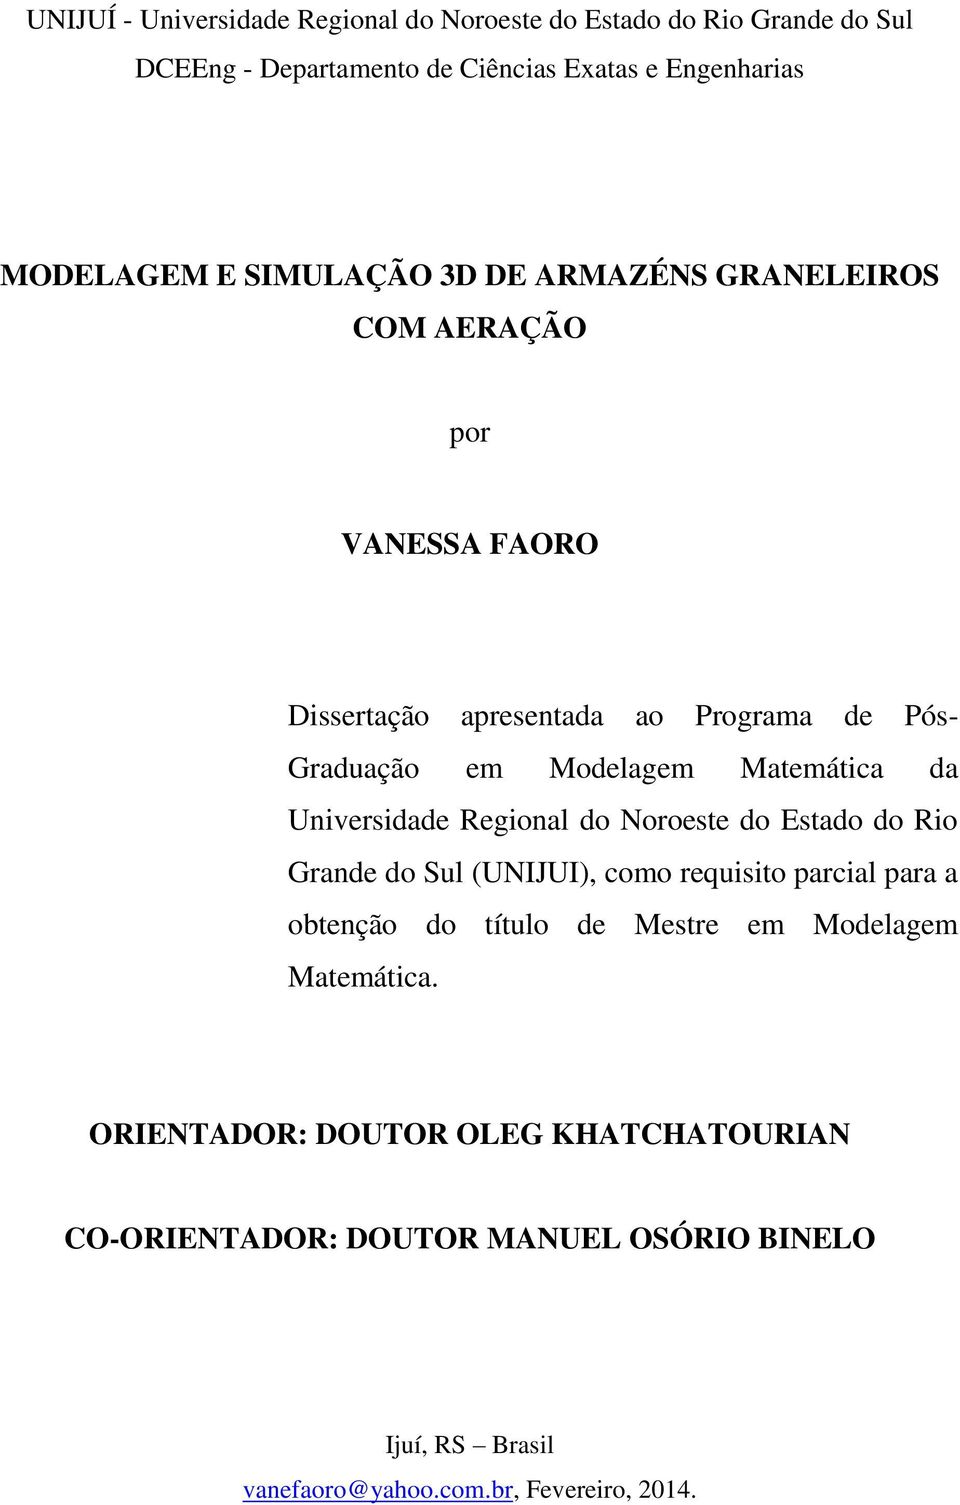 Universidade Regional do Noroeste do Estado do Rio Grande do Sul (UNIJUI), como requisito parcial para a obtenção do título de Mestre em